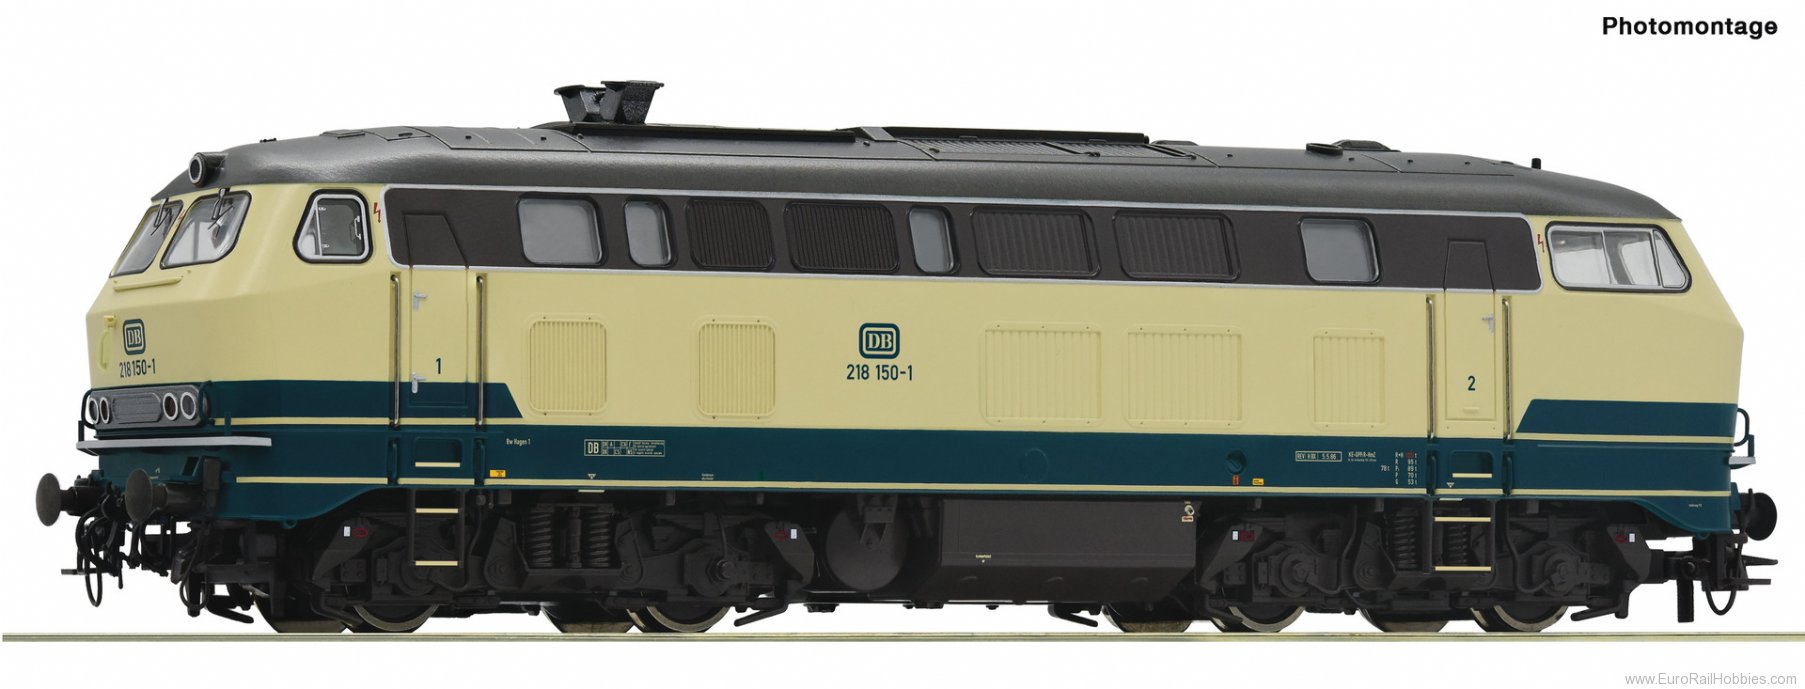 Roco 7310010 Diesel locomotive 218 150-1, DB (Digital Soun